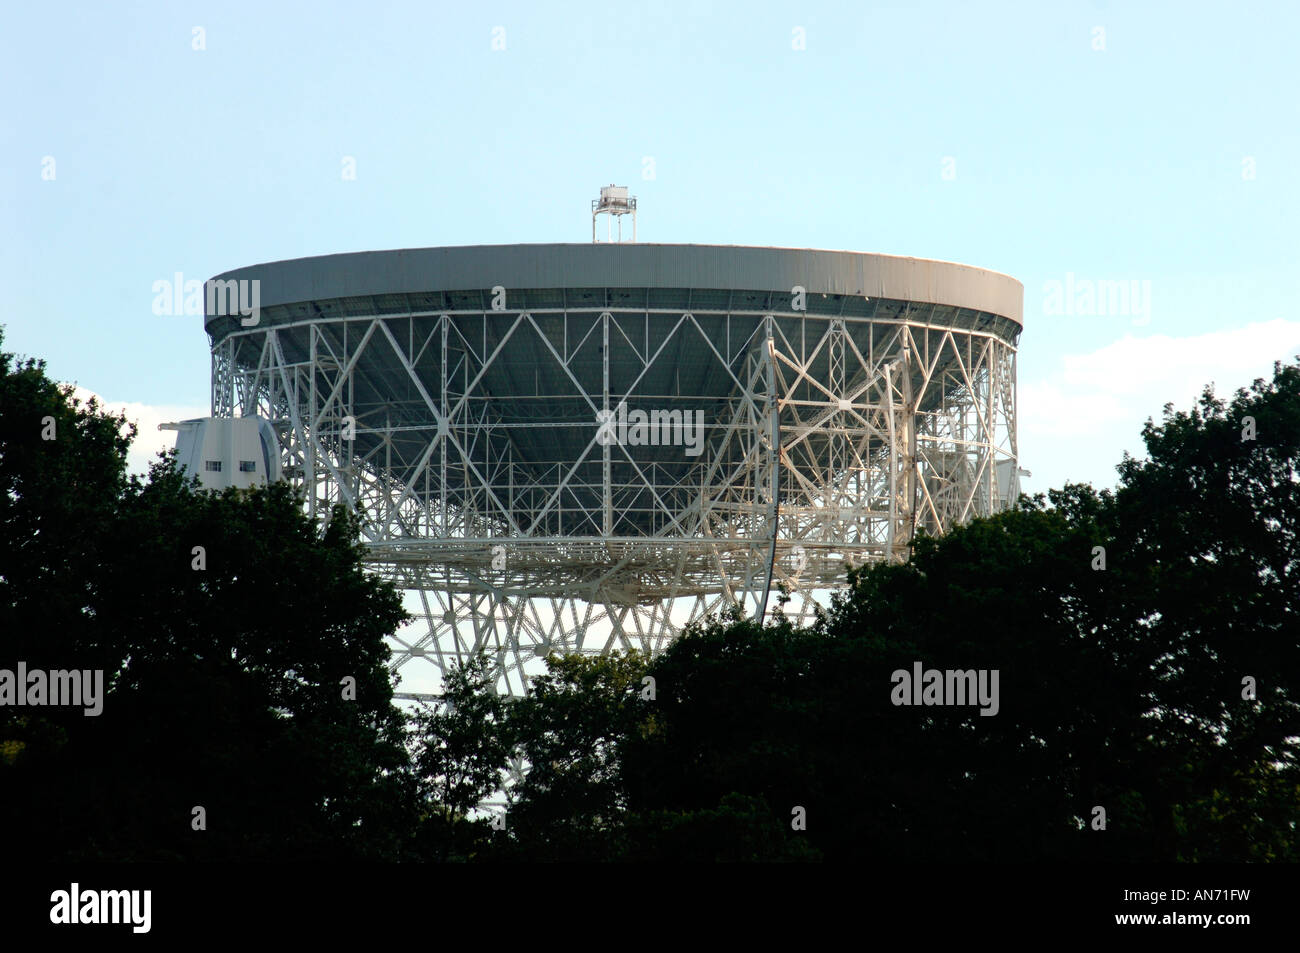 The Jodrell Bank Radio Telescope Dish,Pointing Up Towards The Sky. Stock Photo